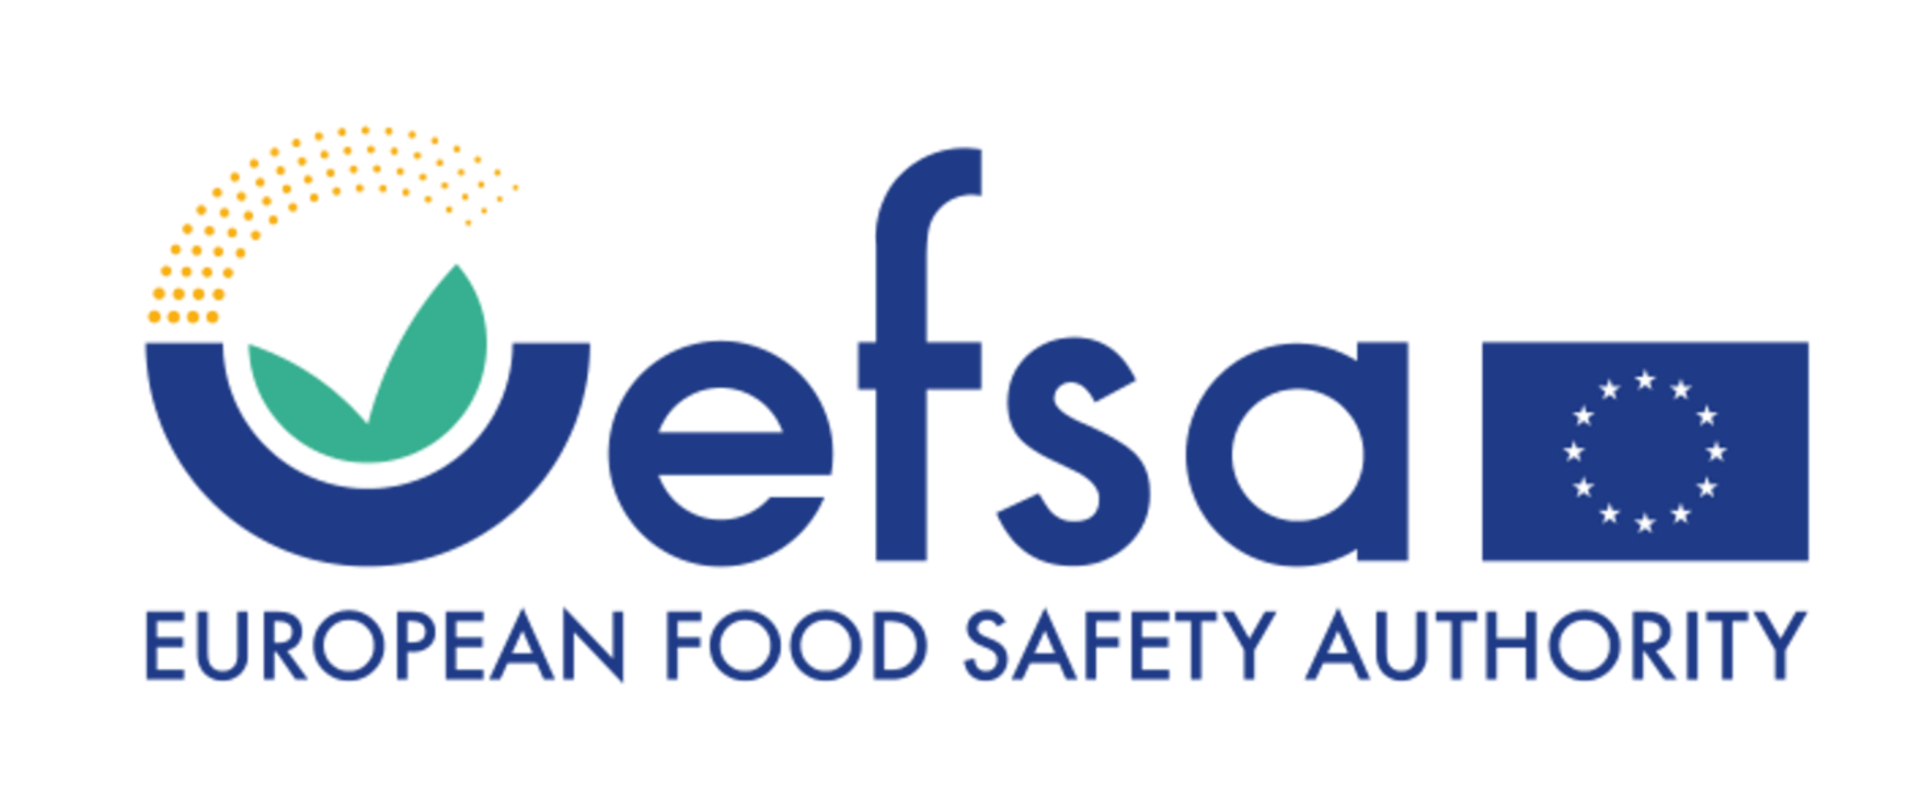 EFSA Wybieram bezpieczną żywność 